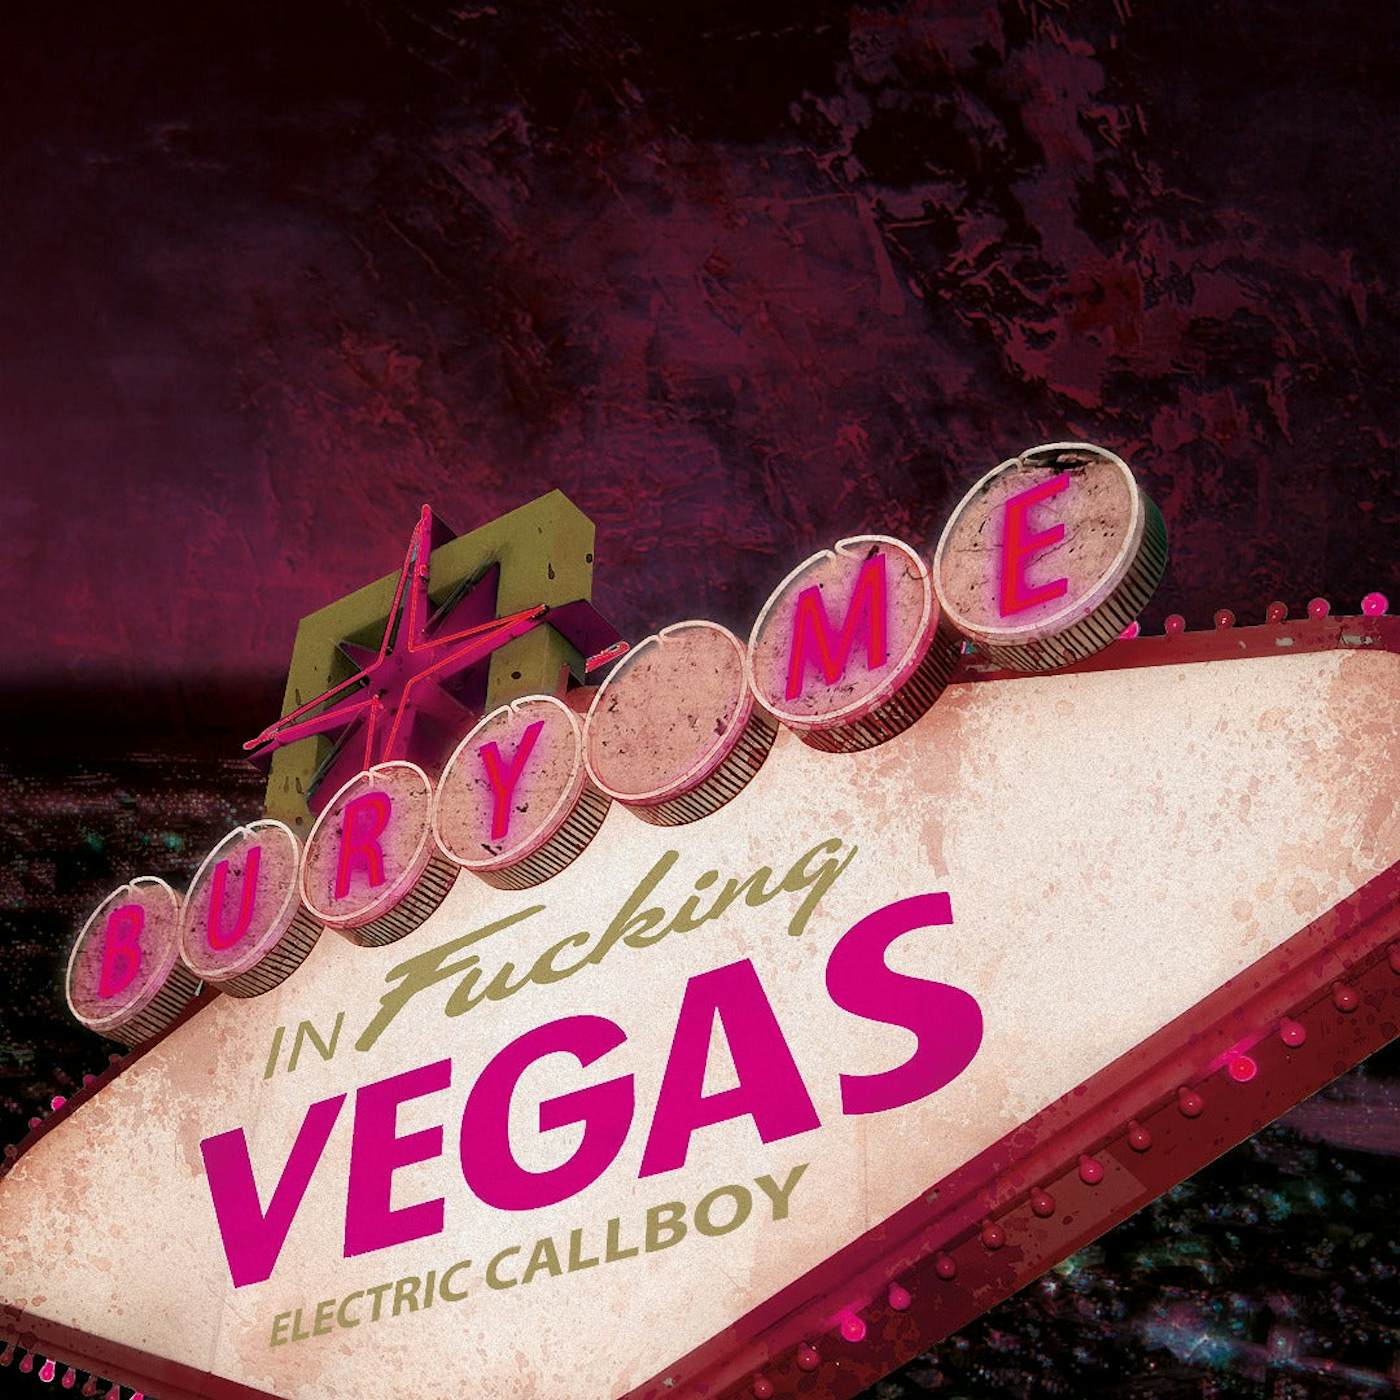 Electric Callboy - Bury Me In Vegas - Vinyl LP (Violet / 2022)